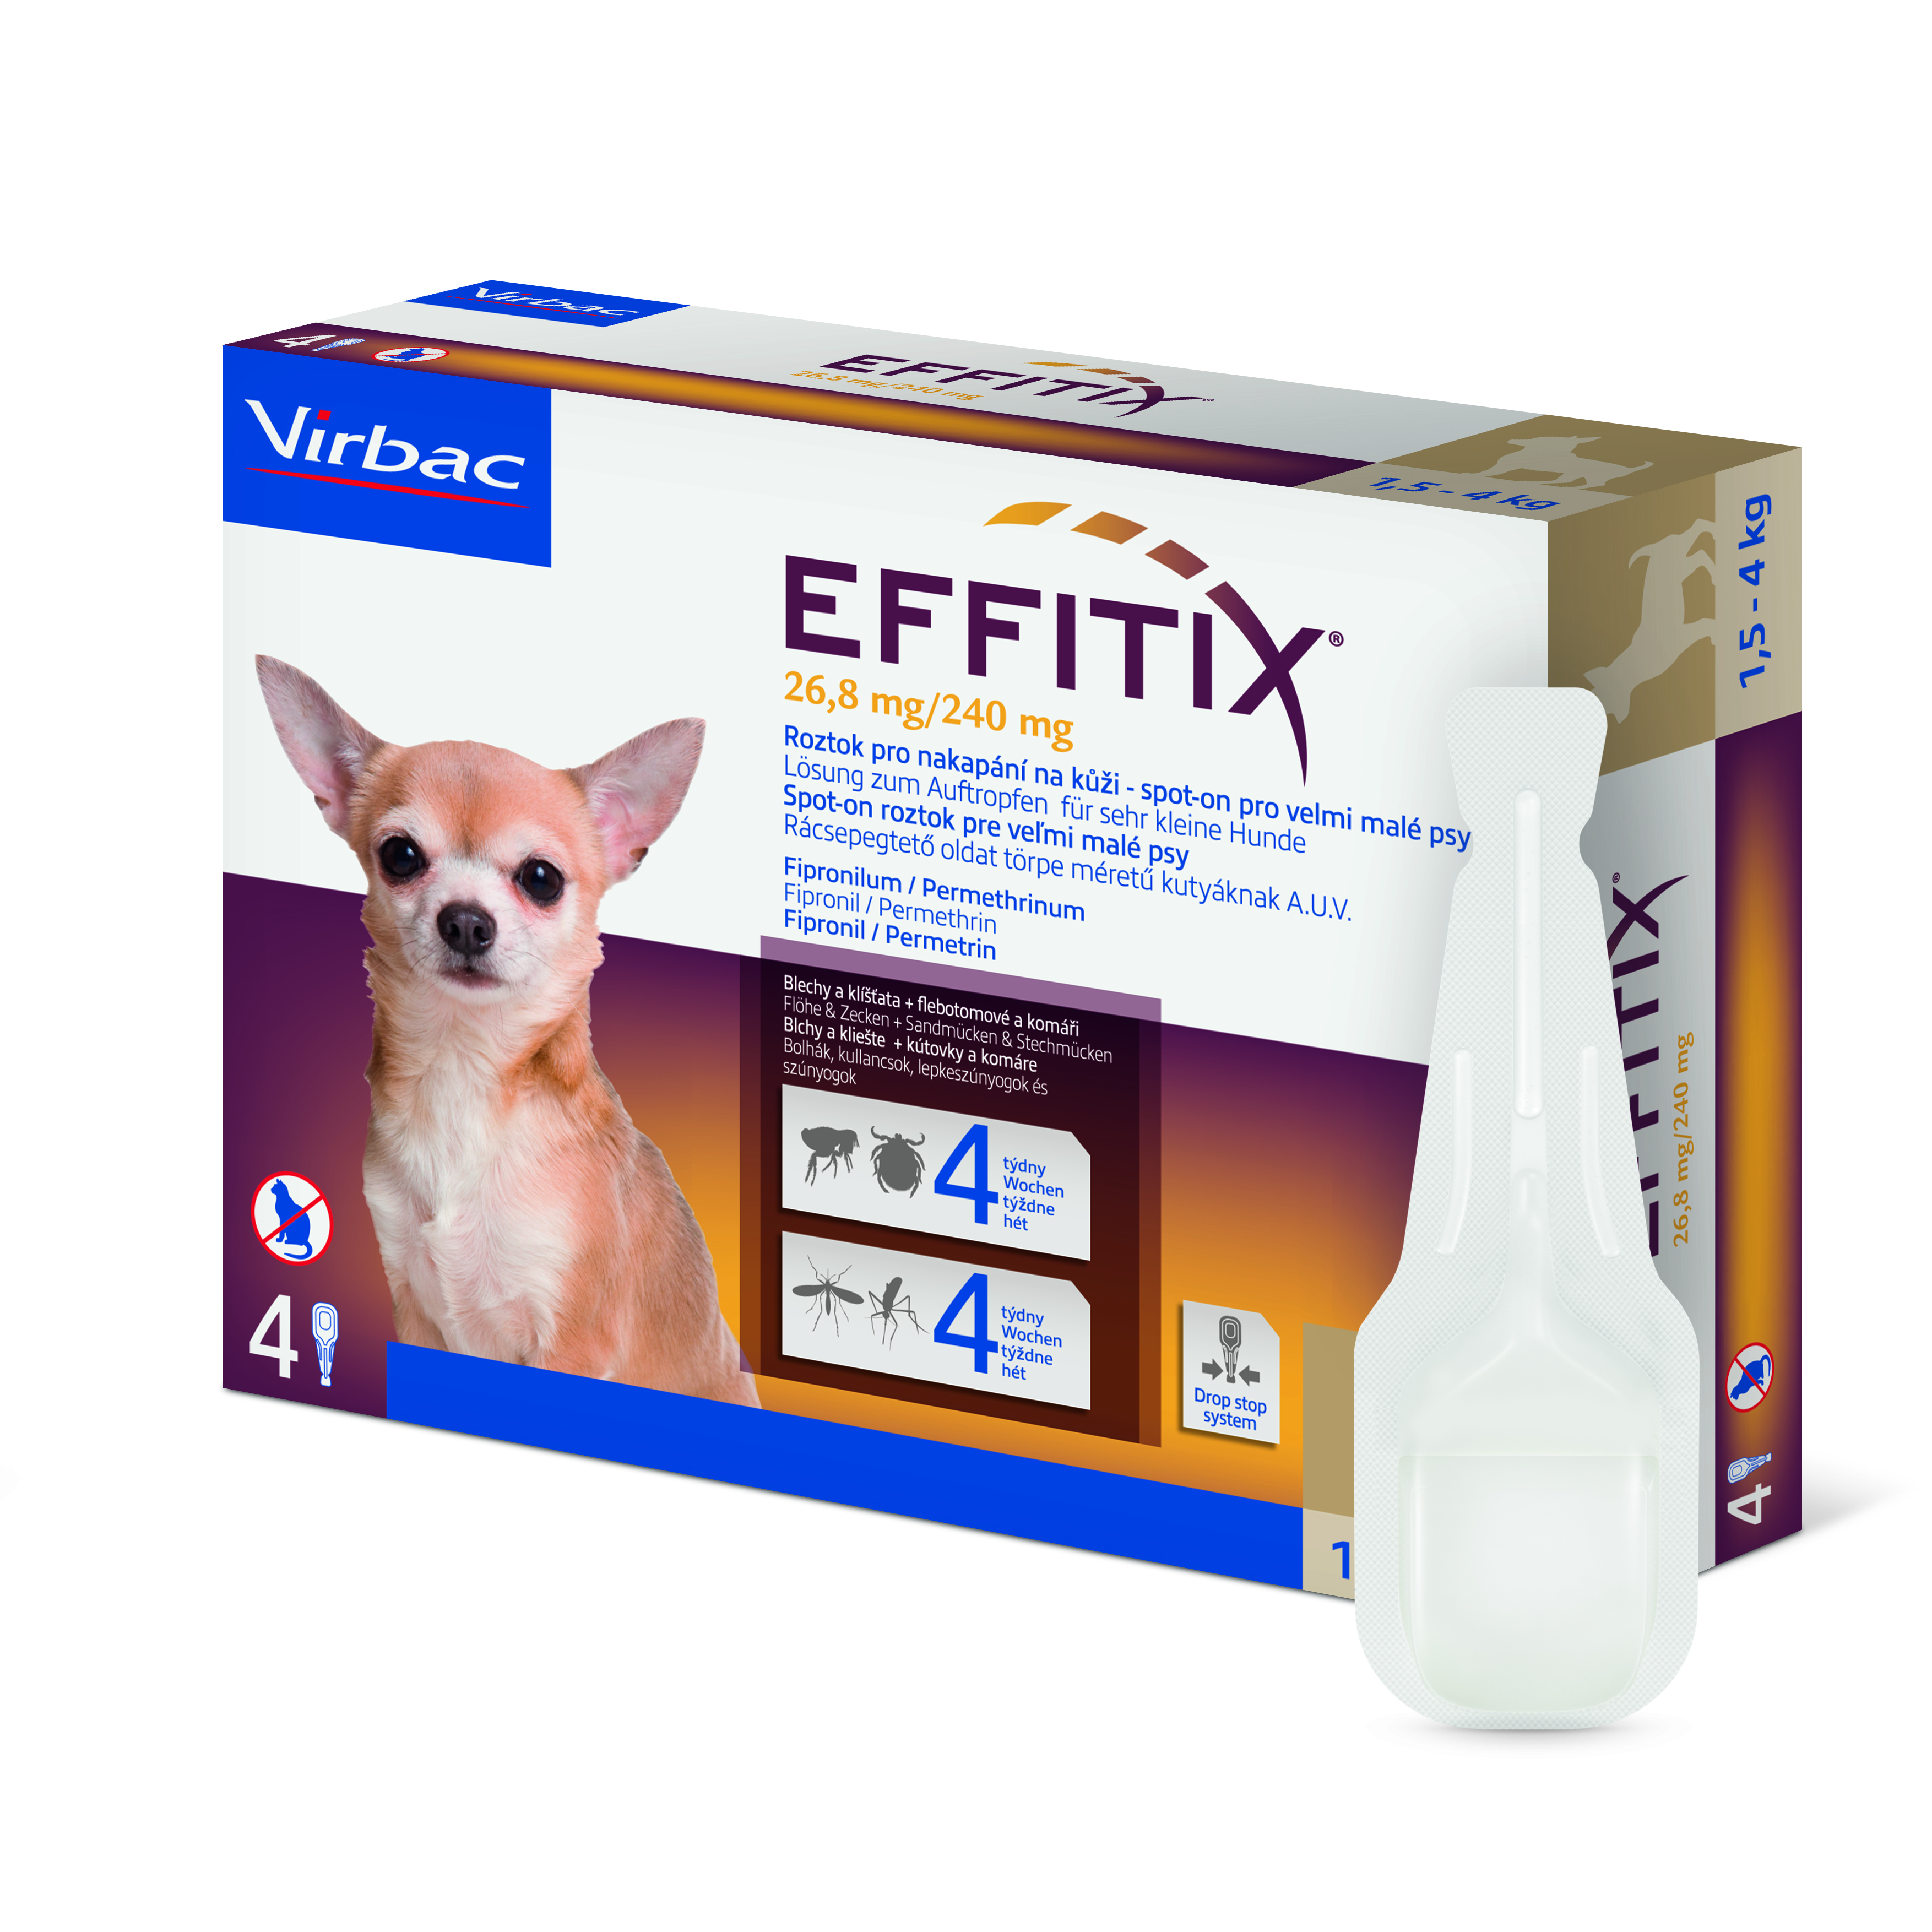 Effitix 26,8 mg/240 mg, roztok pro nakapání na kůži - spot-on pro velmi malé psy 4 x 0,44 ml